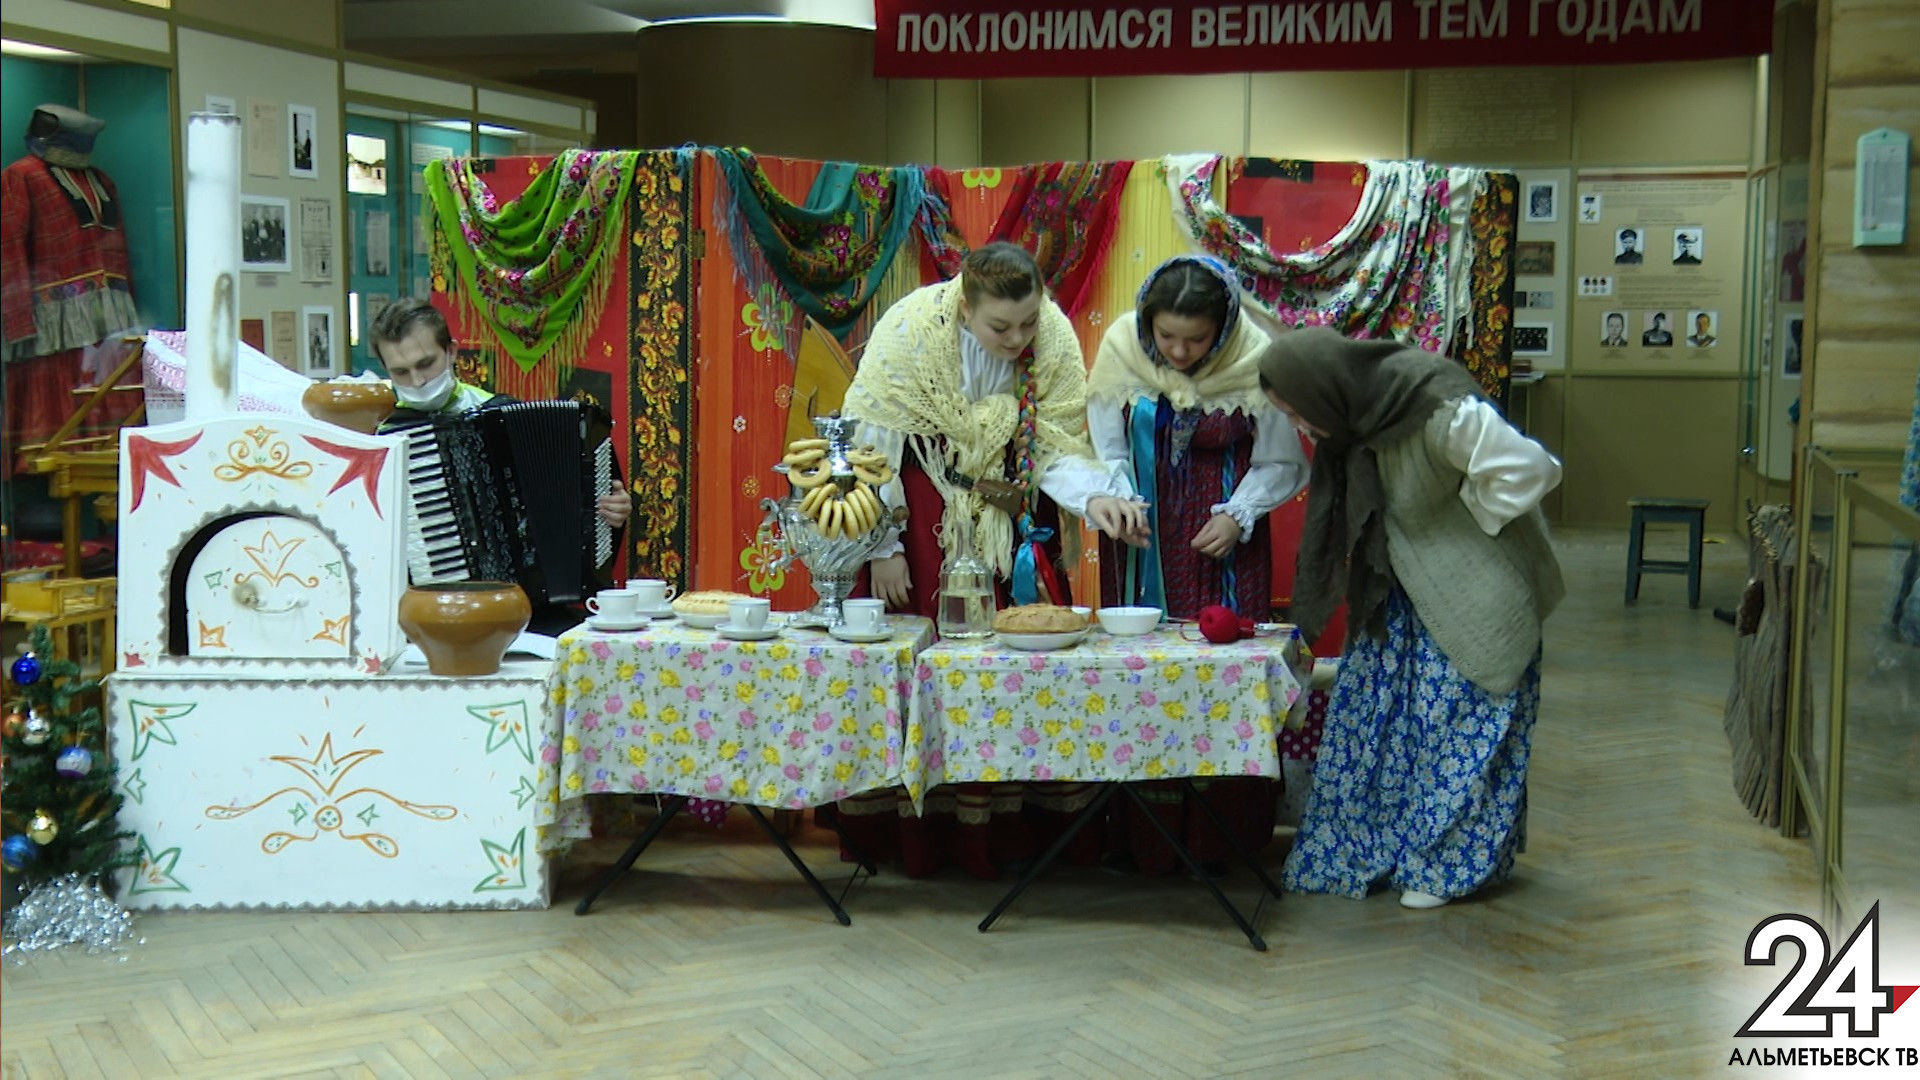 Альметьевские студенты устроили в музее святочные гадания